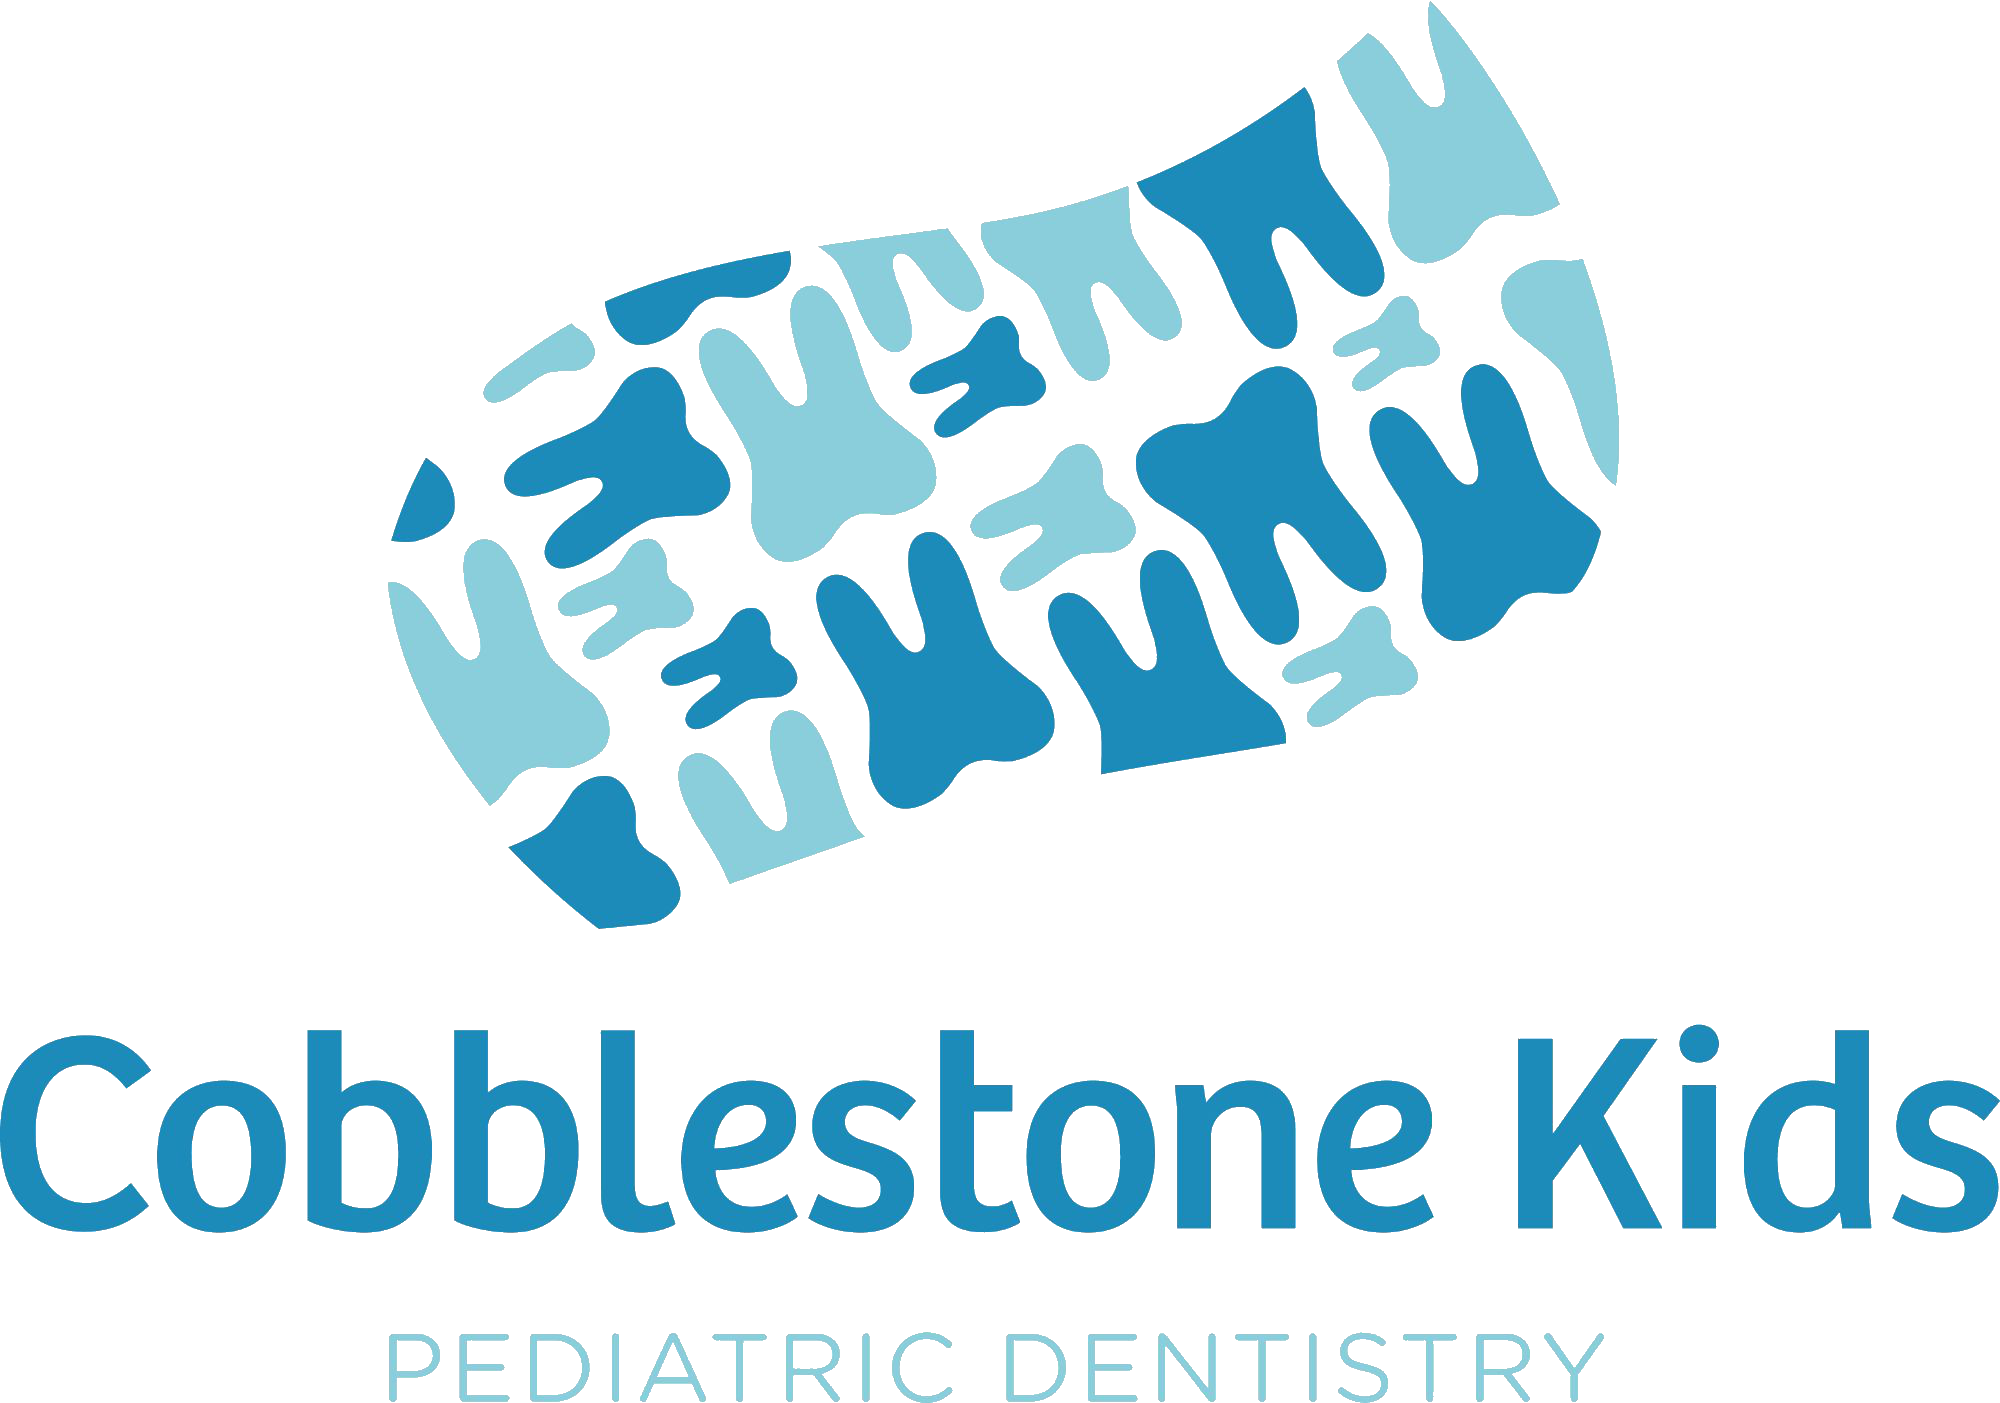 Cobblestone Kids Pediatric Dentistry logo